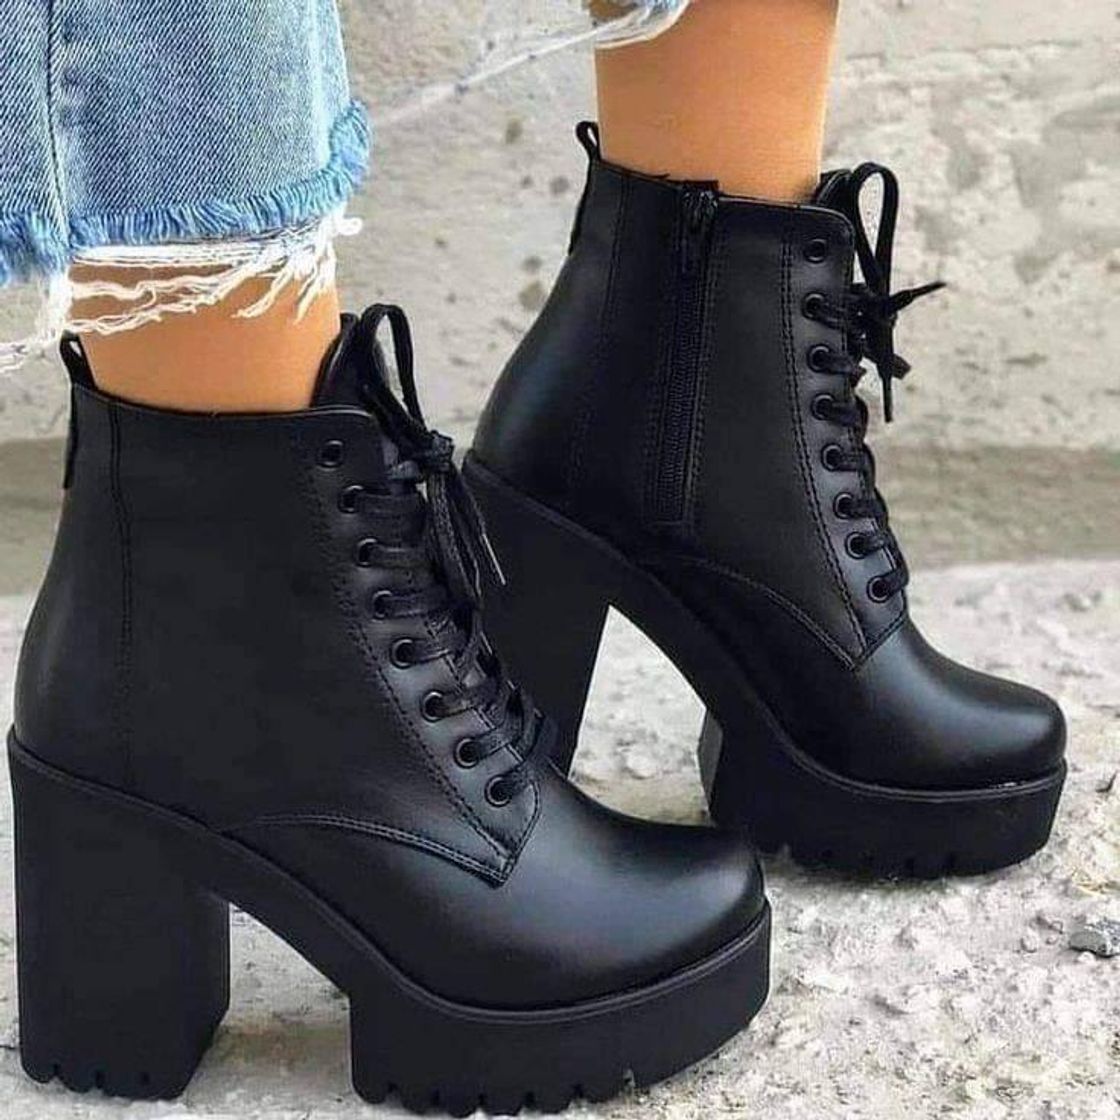 Ei, Fofaღ - Meninas apaixonadas por botas 